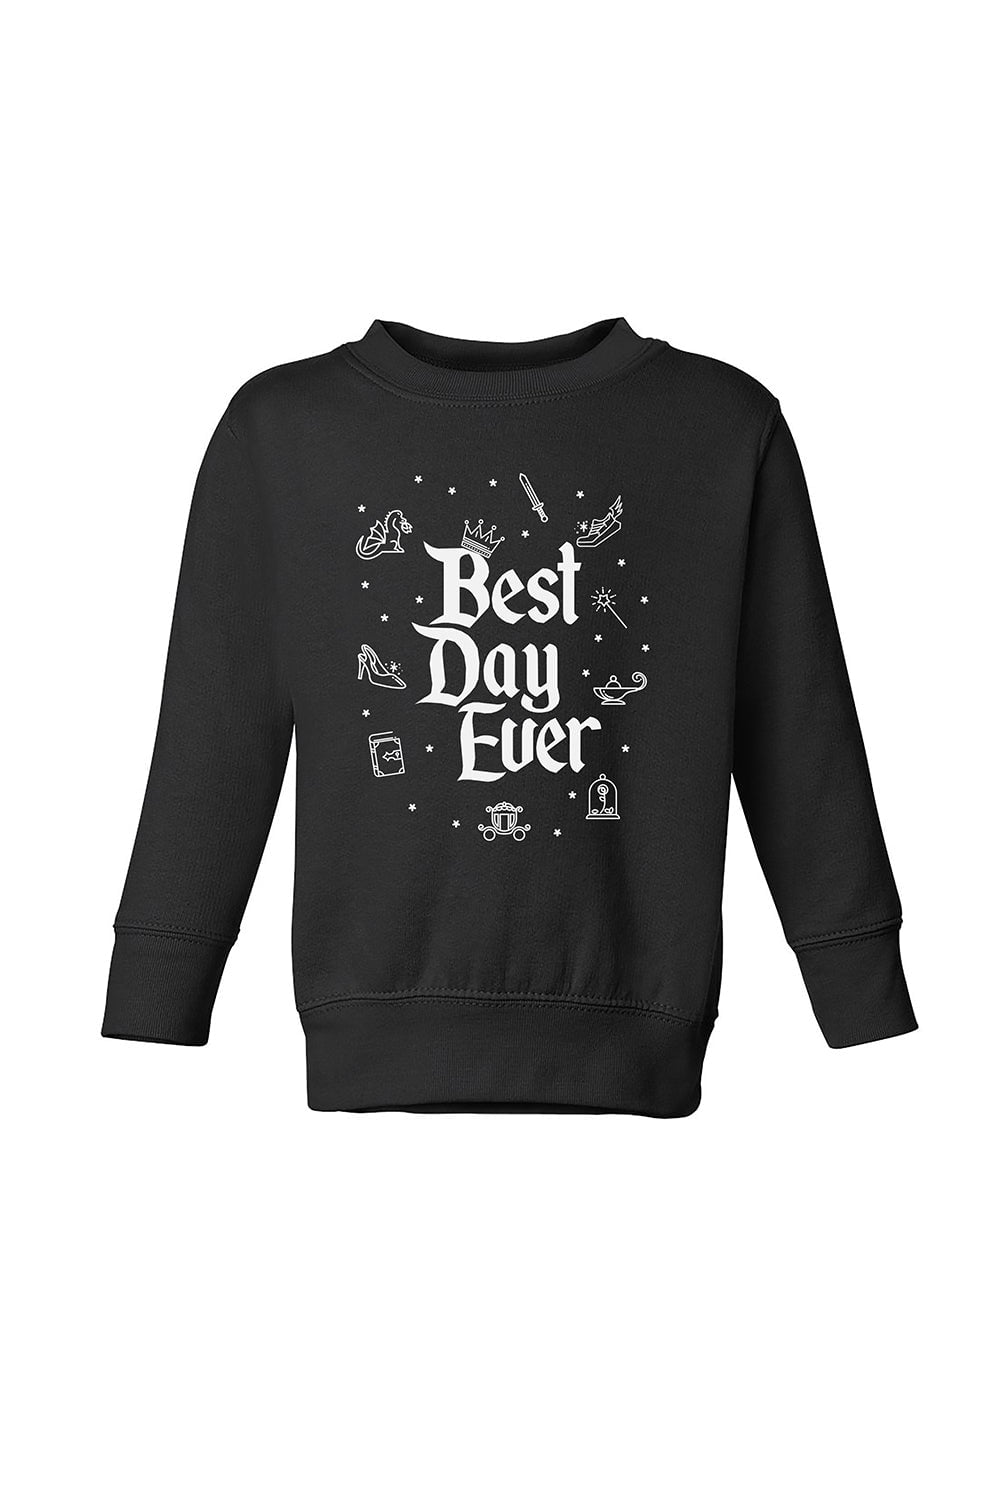 Sarah Marie Design Studio Kids Best Day Ever Kids Sweatshirt